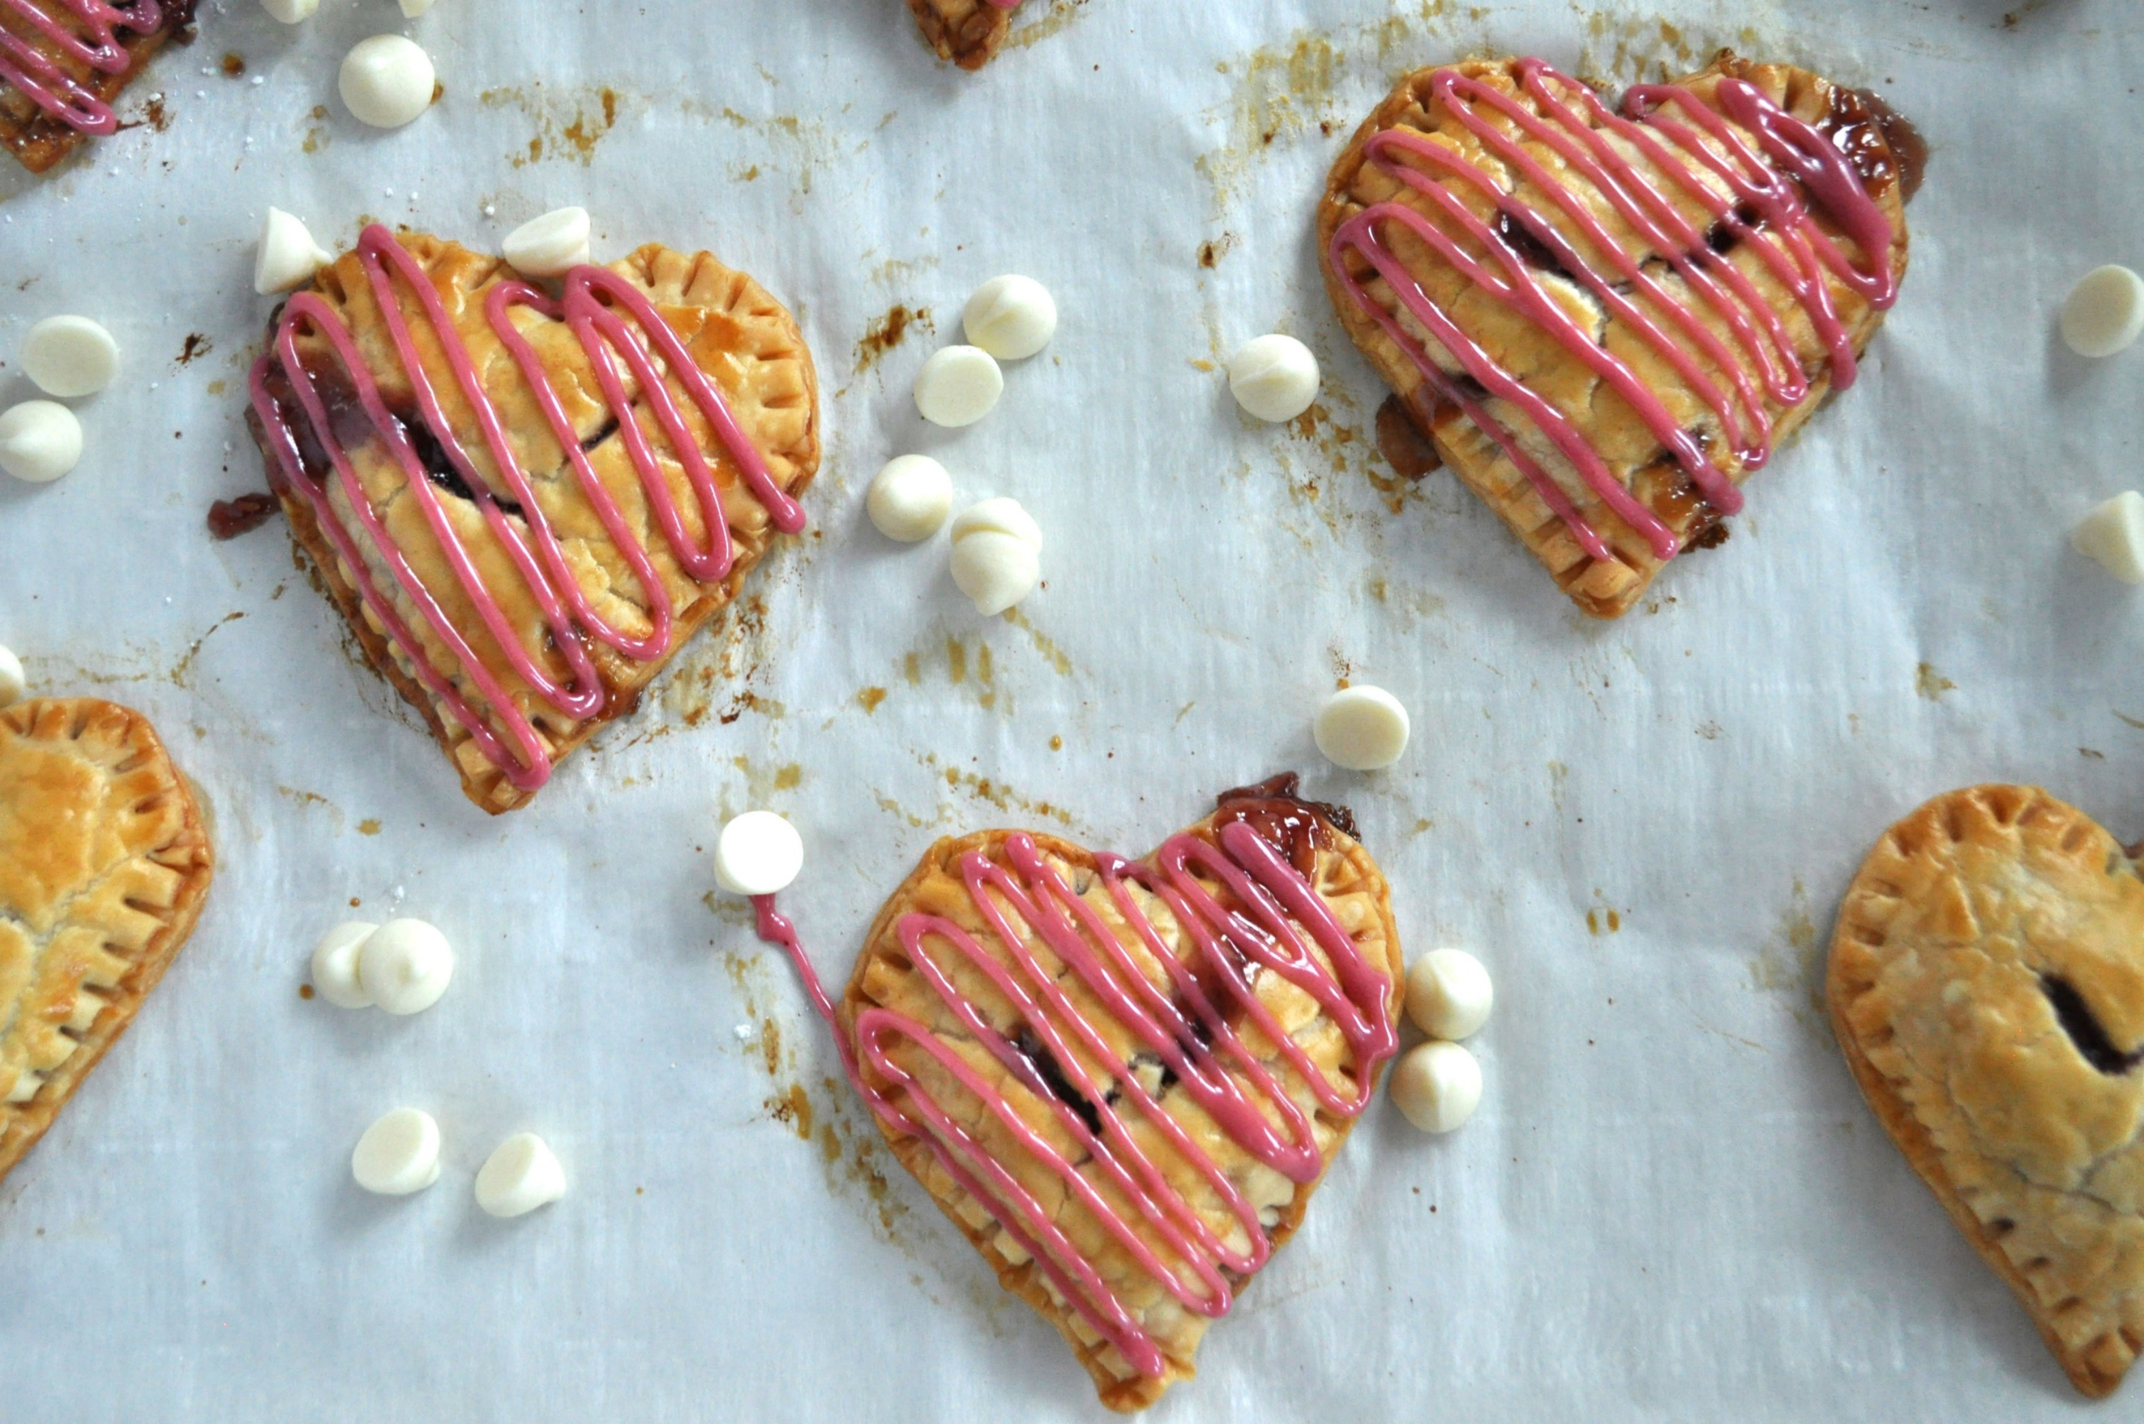 8 Raspberry White Chocolate Heart Pies